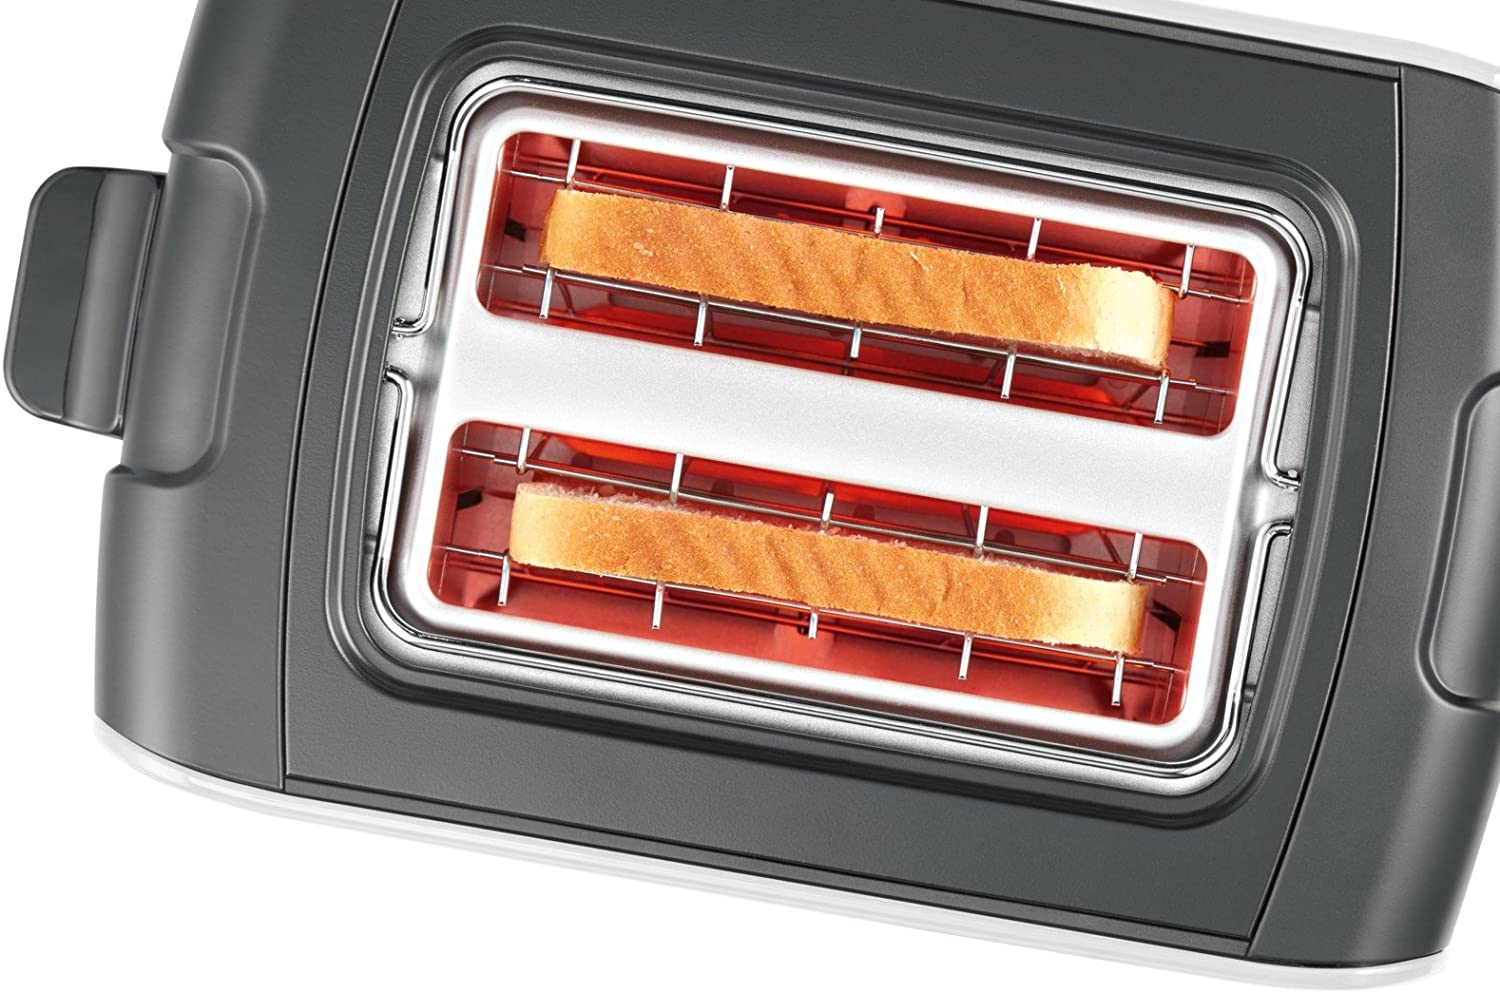 Bosch Toaster, 2 Slices, 1090W (White/Grey)